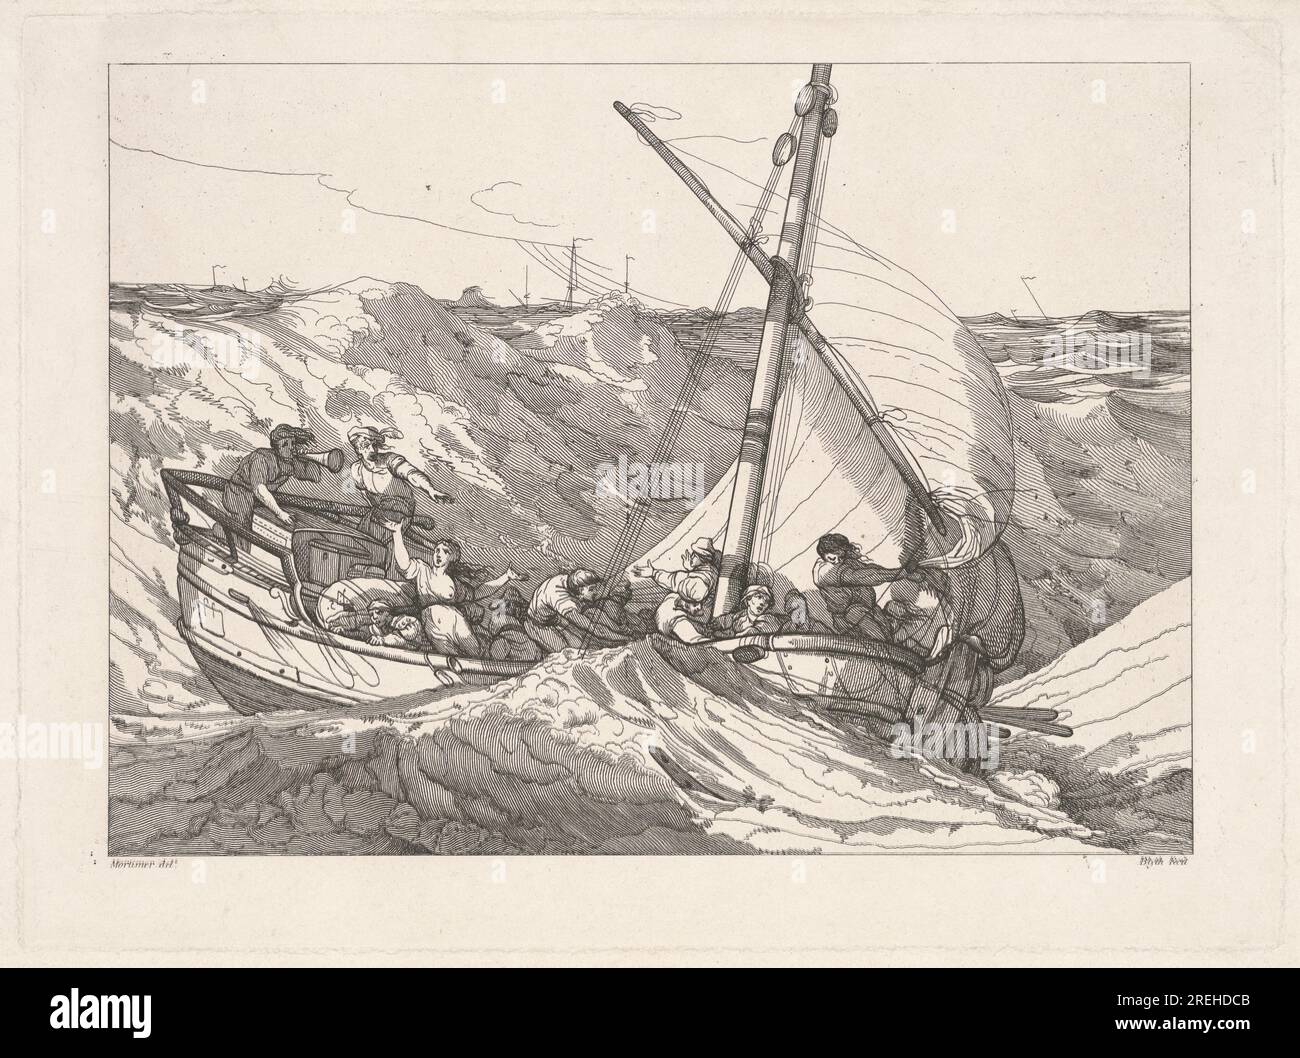 "Robert Blyth, dopo John Hamilton Mortimer, Boat in a Storm at Sea, 1803, incisione su carta stesa, piastra: 25,3 x 34,5 cm (9 15/16 x 13 9/16 pollici) Foglio: 27,5 x 41,8 cm (10 13/16 x 16 7/16 pollici), regalo di Thomas Vogler in memoria di suo fratello Donald J. Vogler, 2017.53.84' Foto Stock